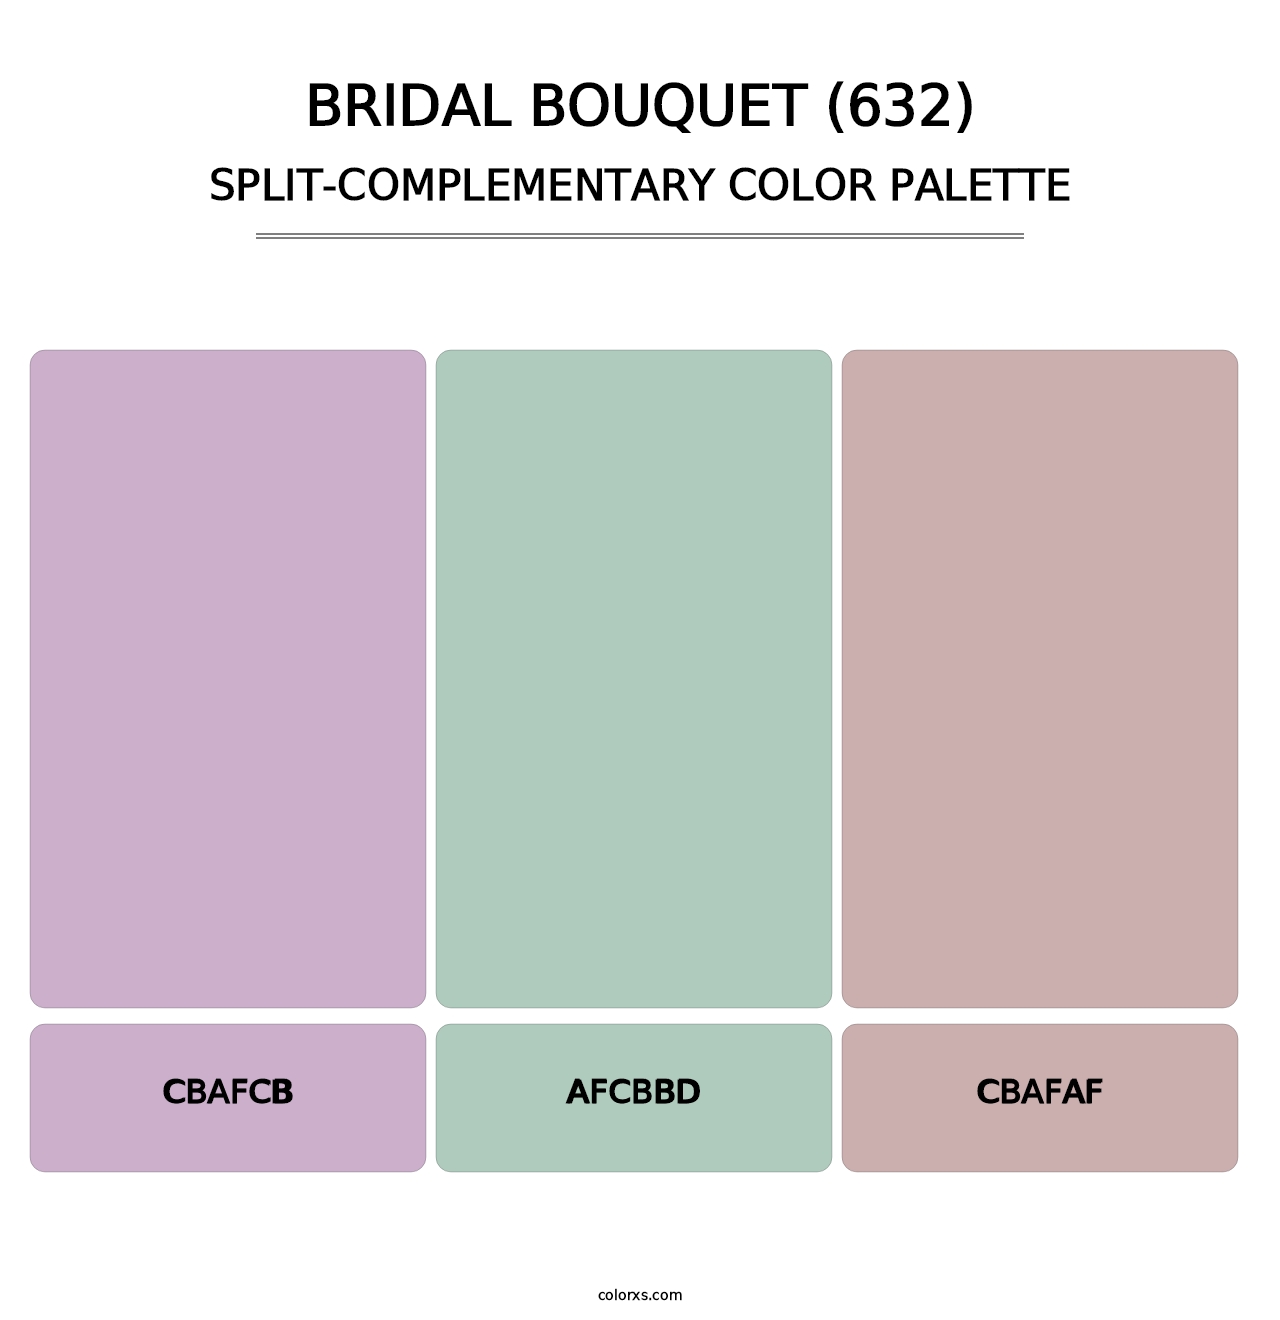 Bridal Bouquet (632) - Split-Complementary Color Palette